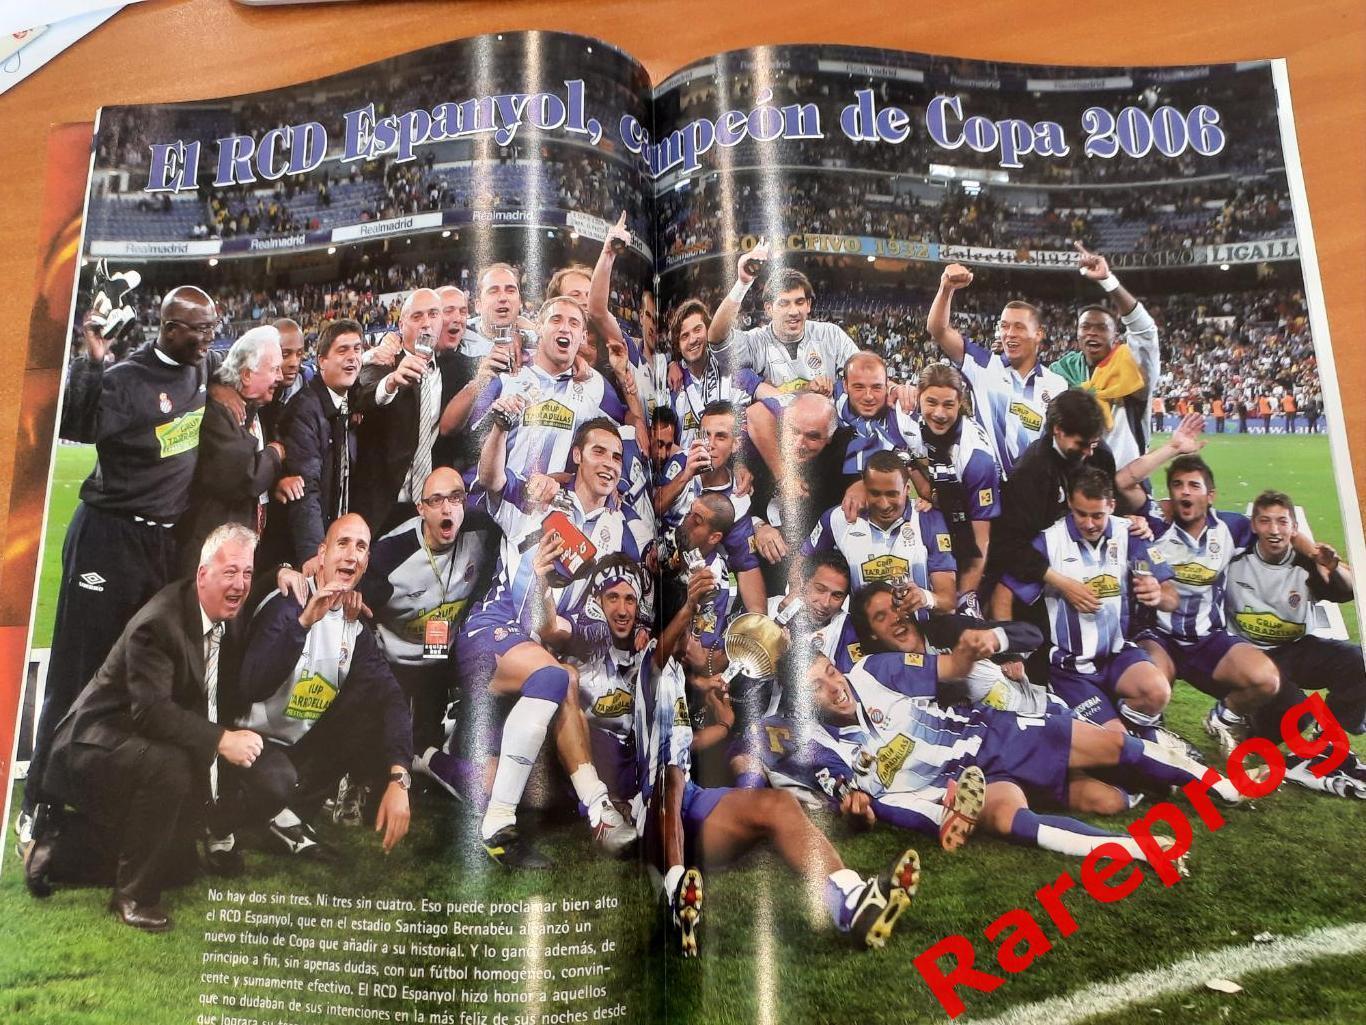 журнал Футбол RFEF Испания № 85 апрель 2006 - постер Эспаньол Cesc Fabregas 1